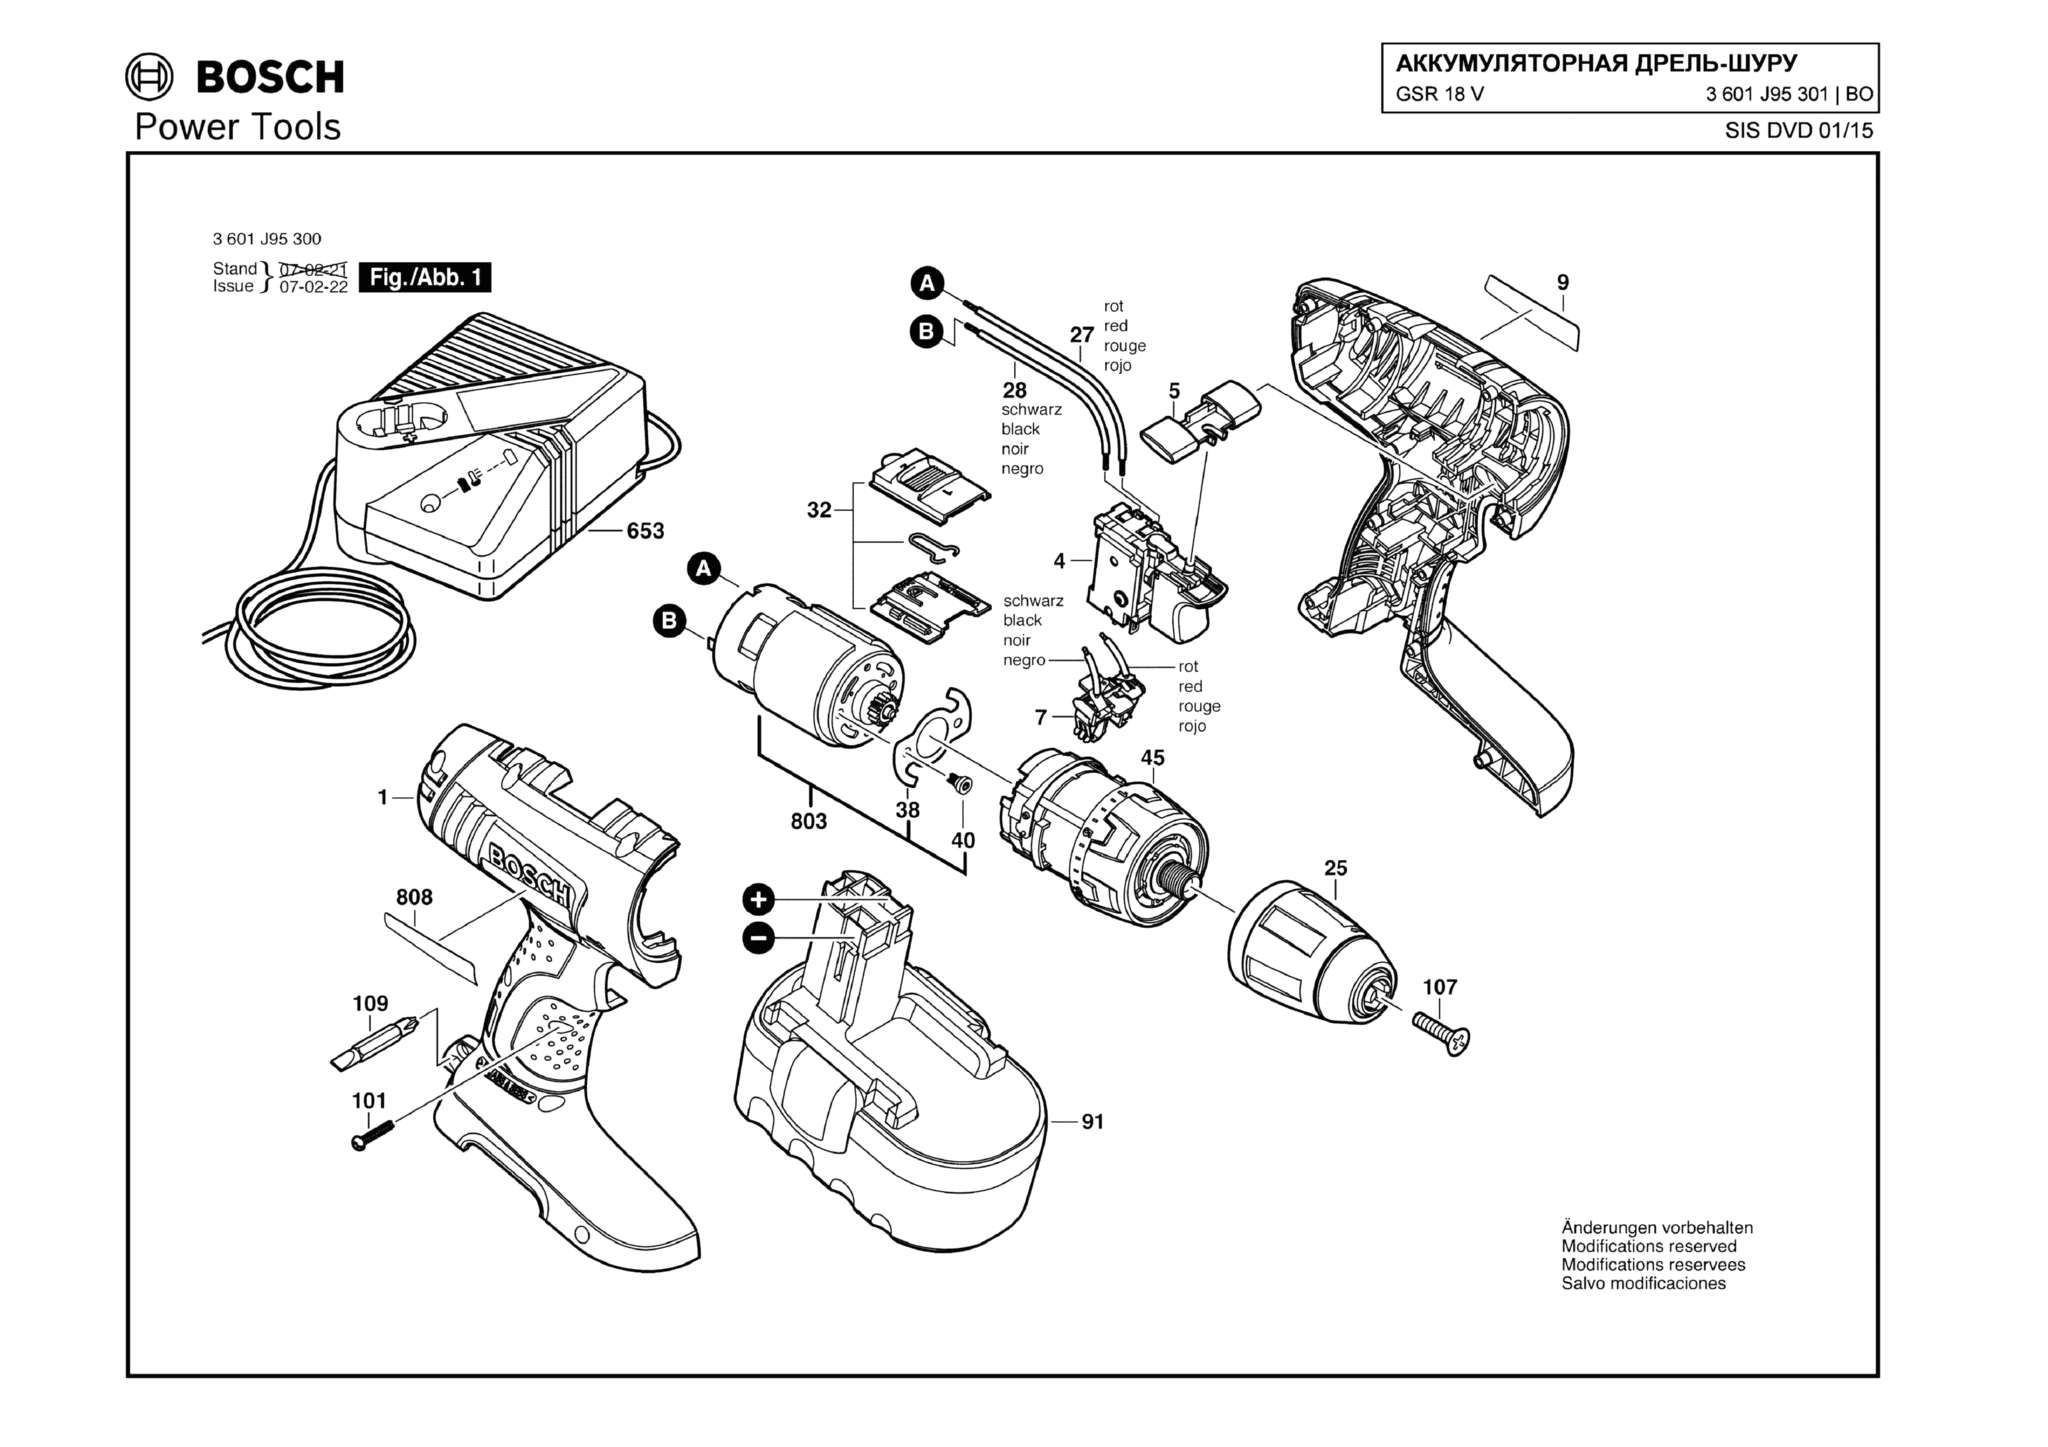 Запчасти, схема и деталировка Bosch GSR 18 V (ТИП 3601J95301)